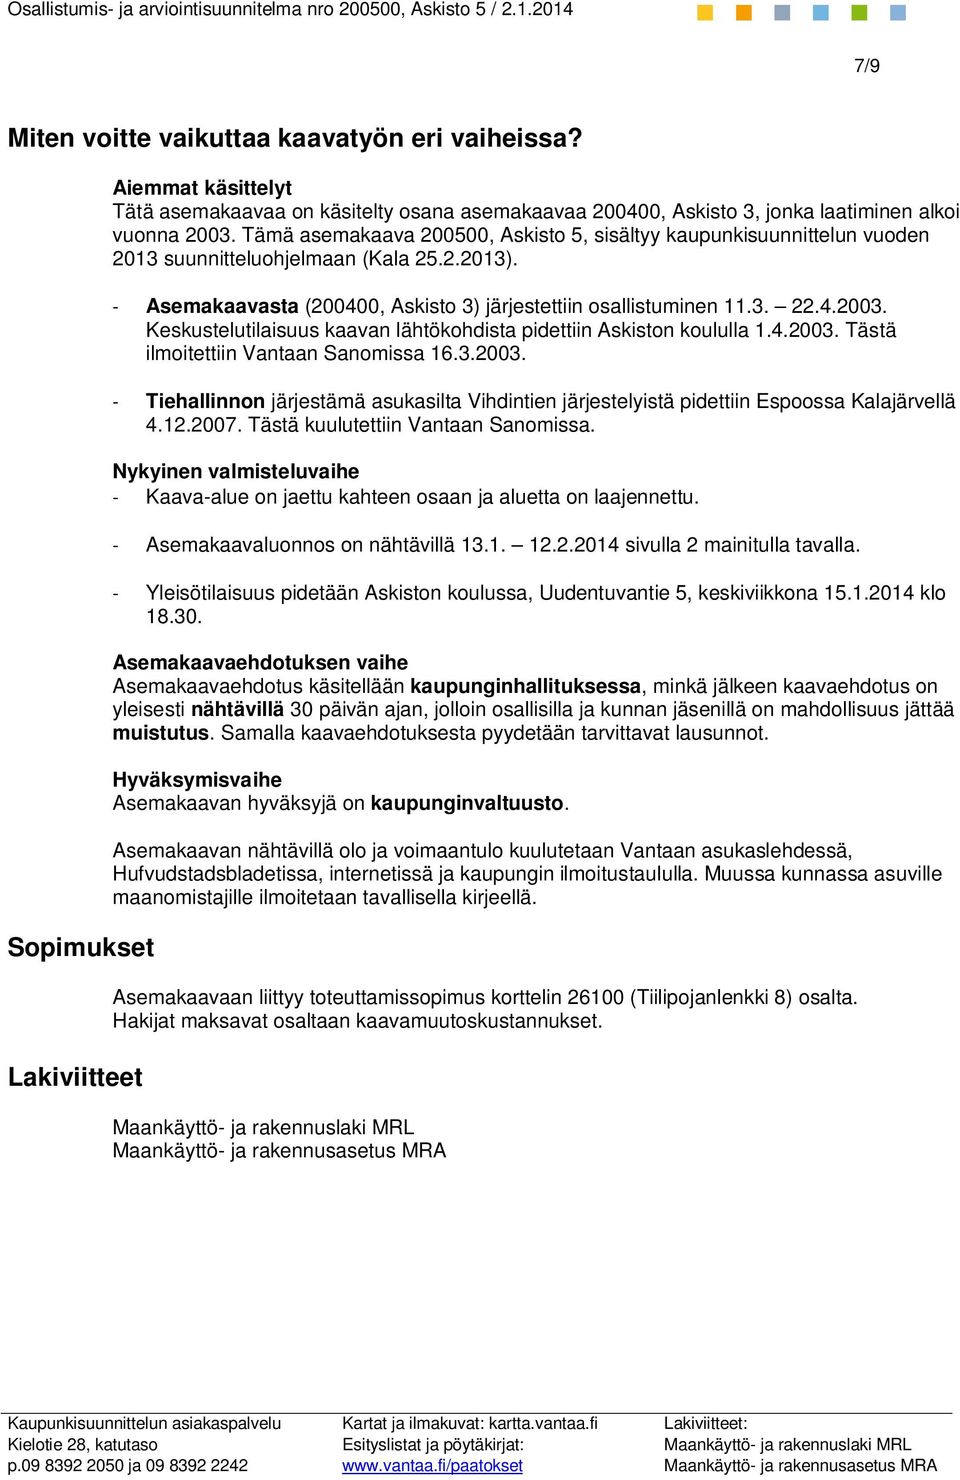 Keskustelutilaisuus kaavan lähtökohdista pidettiin Askiston koululla 1.4.2003. Tästä ilmoitettiin Vantaan Sanomissa 16.3.2003. - Tiehallinnon järjestämä asukasilta Vihdintien järjestelyistä pidettiin Espoossa Kalajärvellä 4.